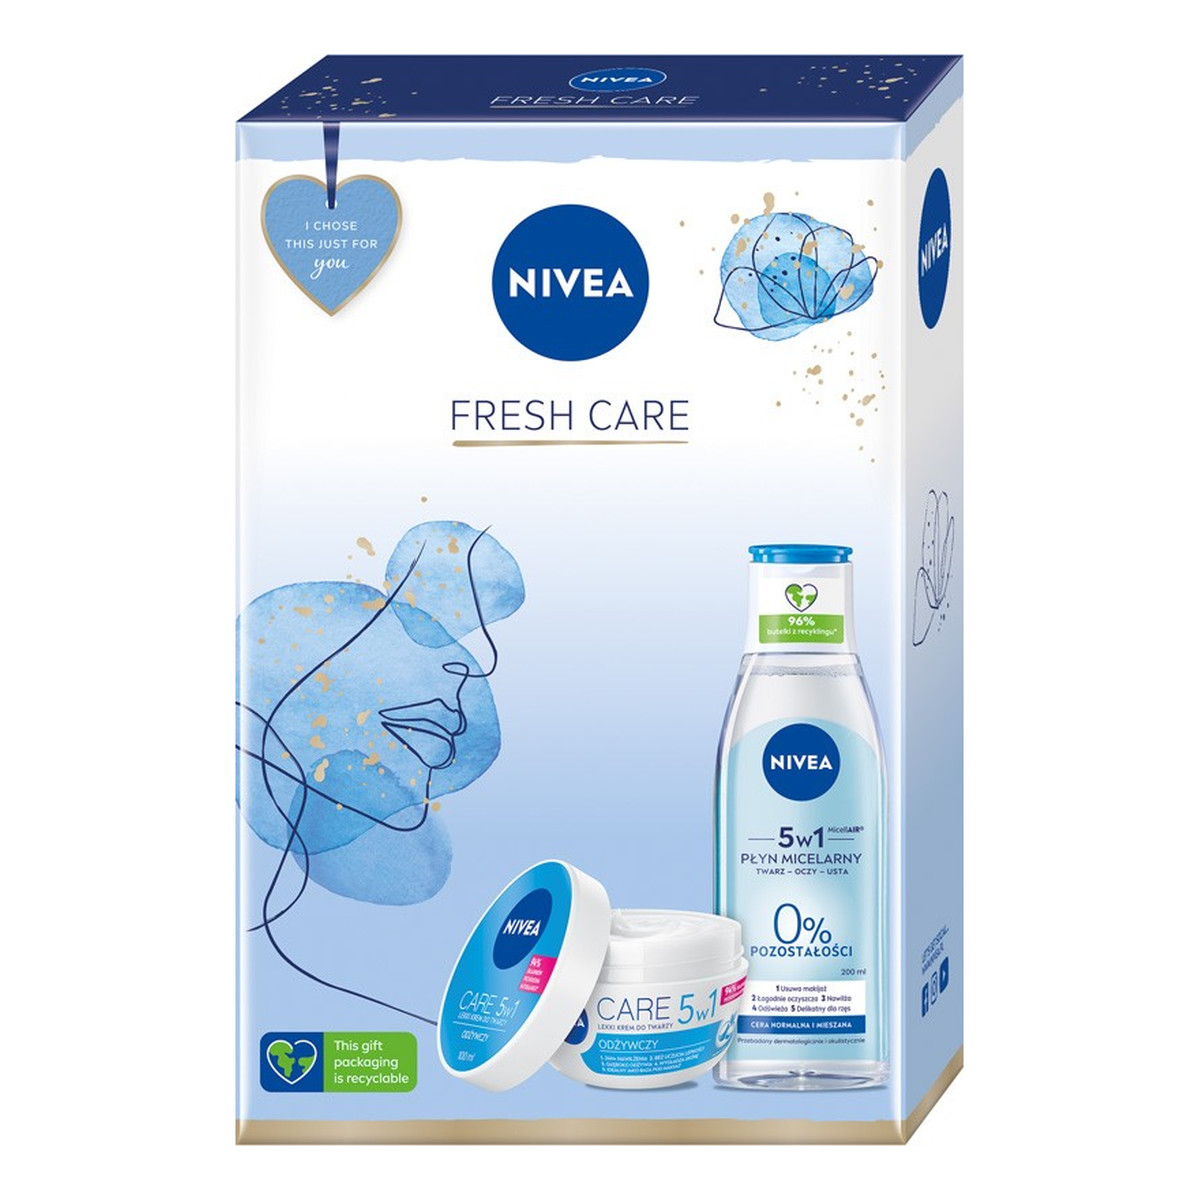 Nivea Fresh Care Zestaw prezentowy krem do twarzy 5w1 + płyn micelarny